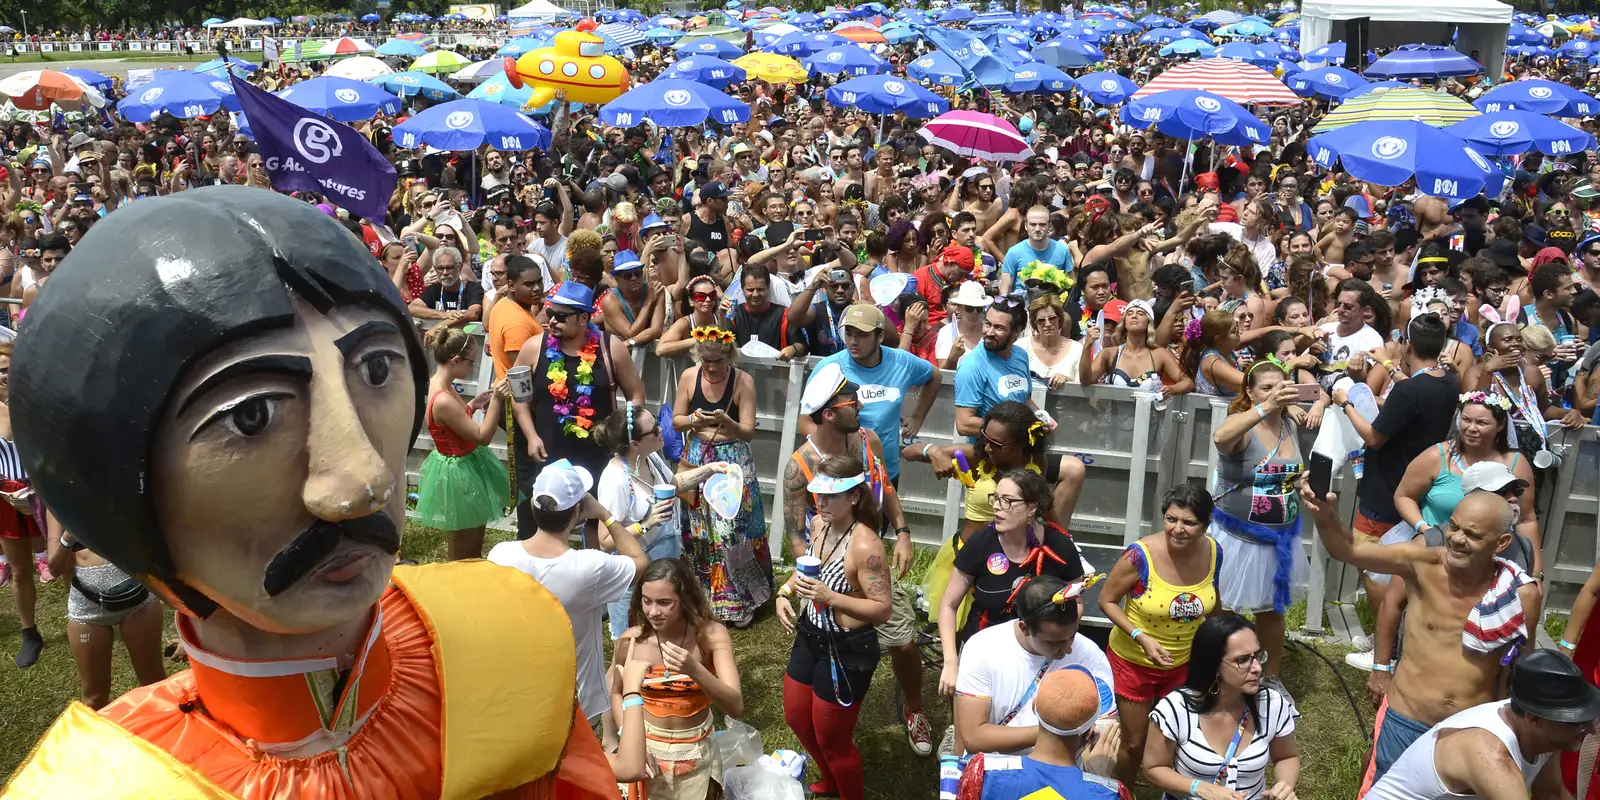 Sancionada lei que torna patrimônio cultural os blocos de carnaval